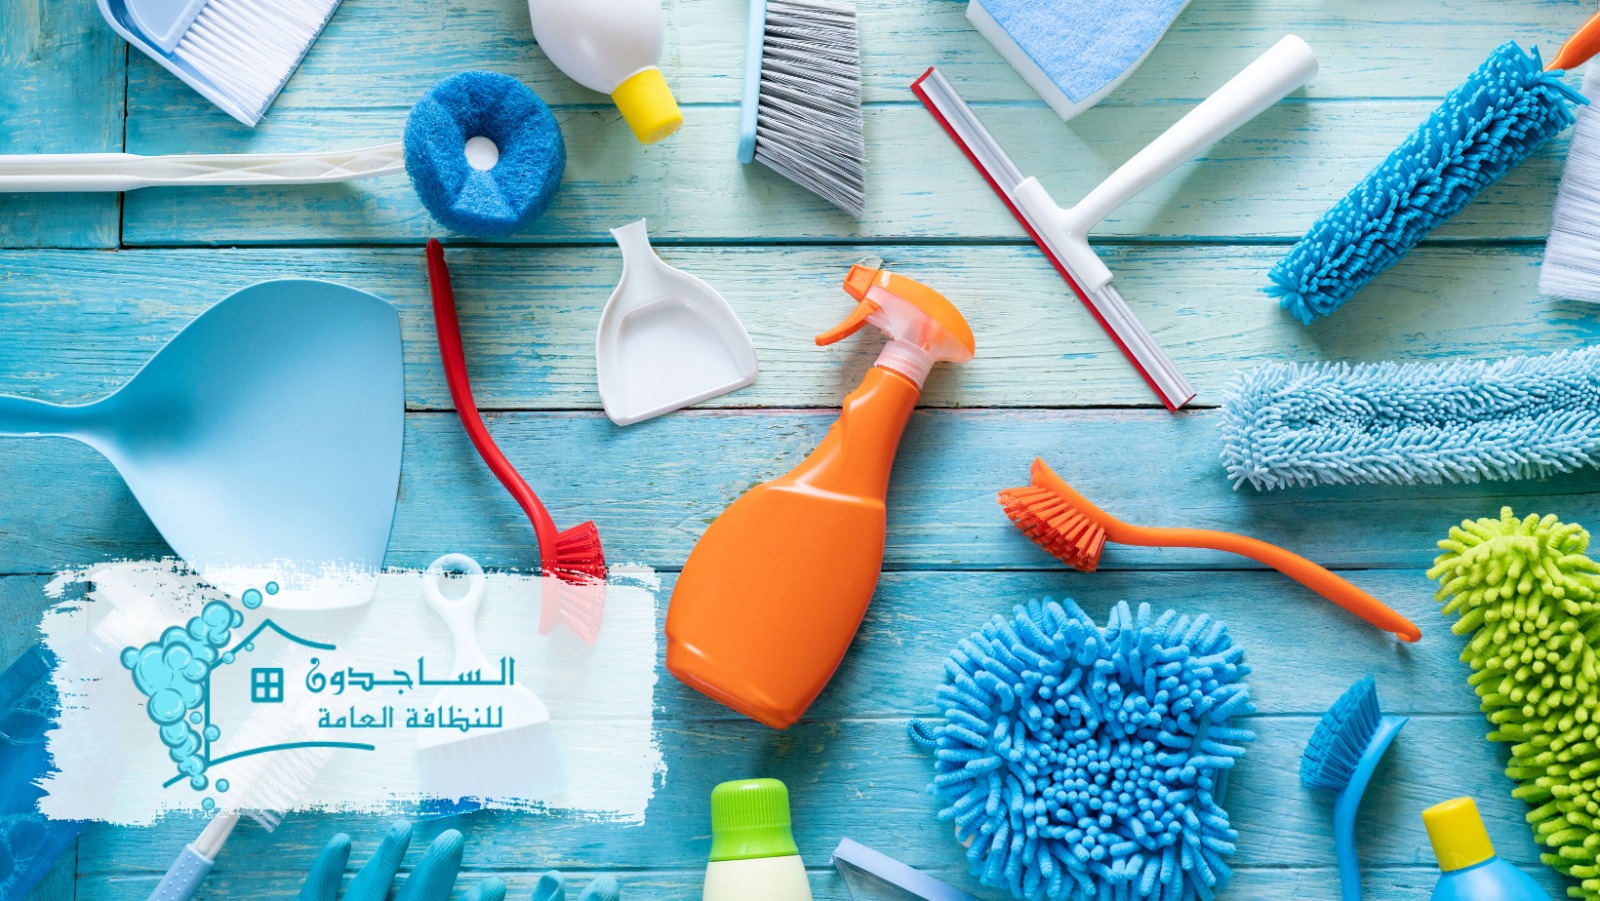 شركة تنظيف شاملة بالرياض الساجدون الاحدث والافضل أفضل الشركات المختصة في توفير خدمات التنظيف المنزلي